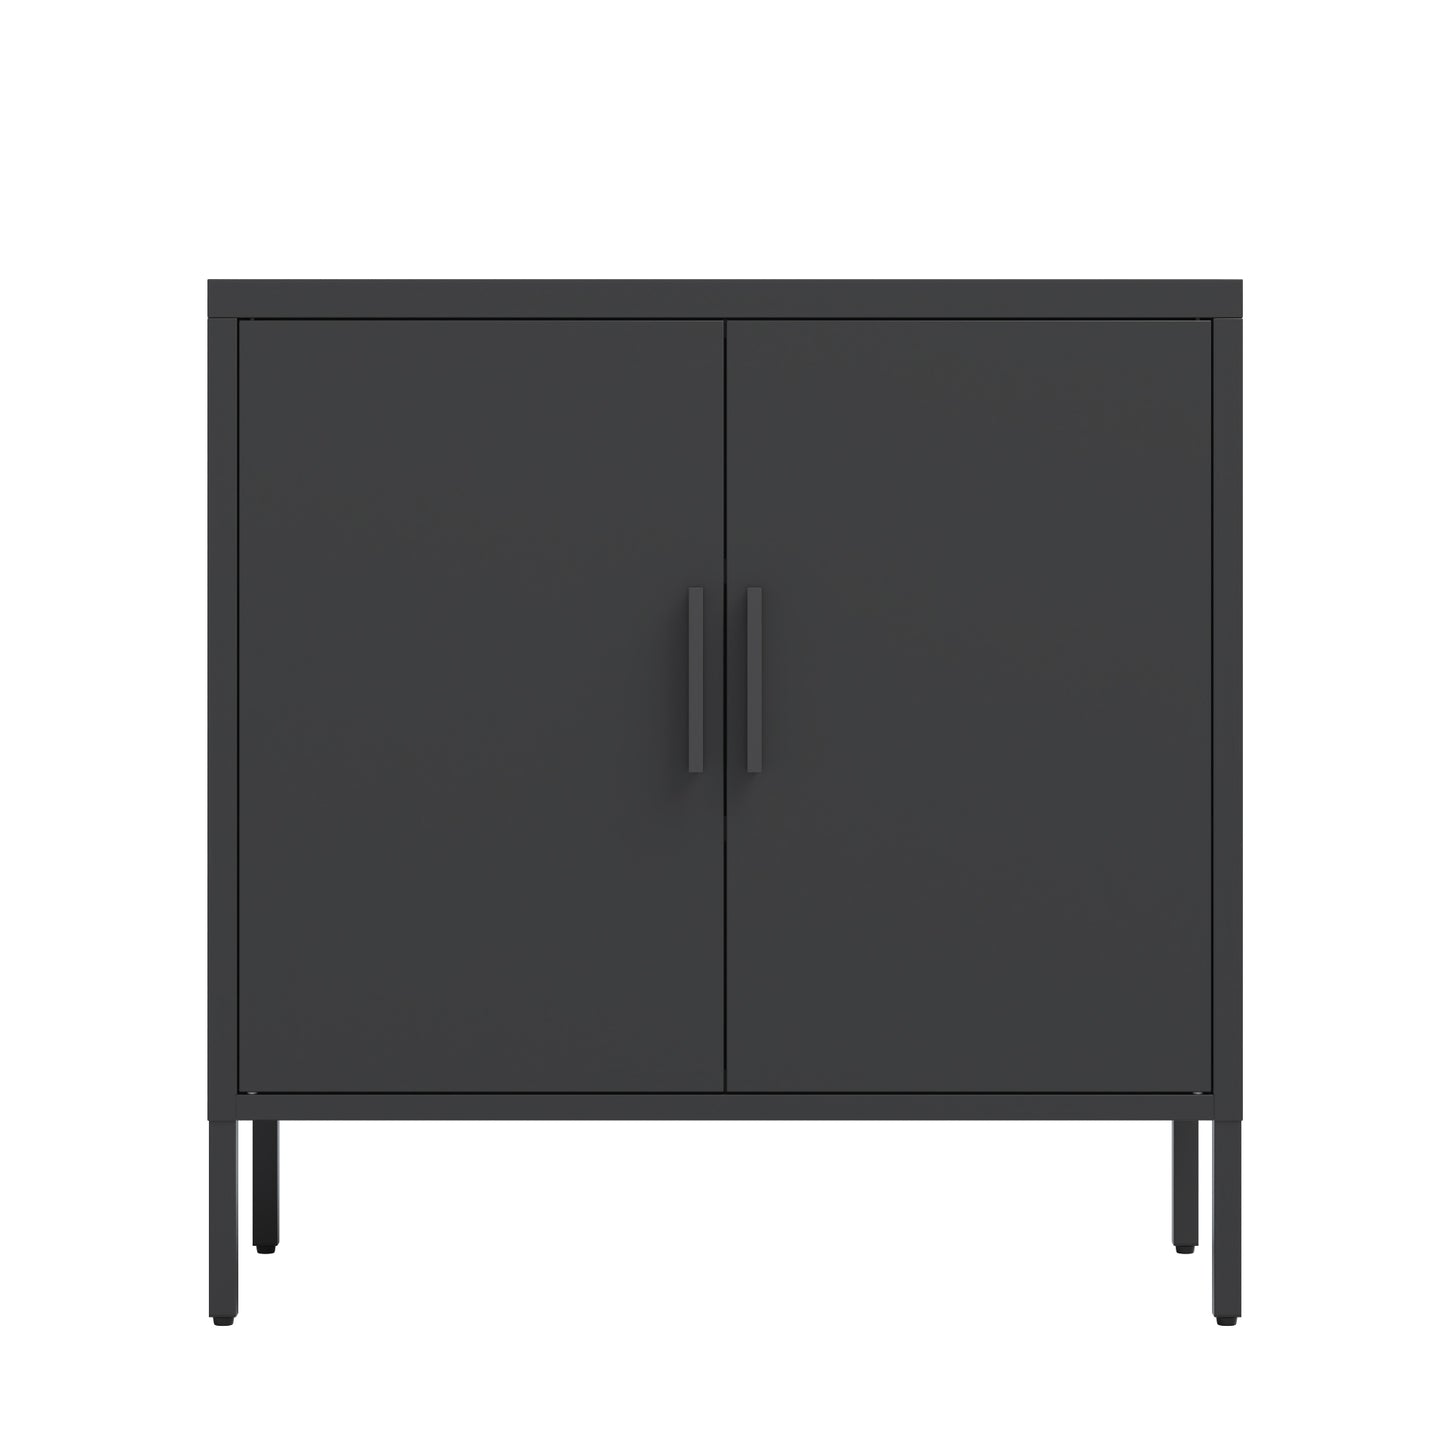 Lockable Steel Storage Cabinet with Adjustable Shelves, Black